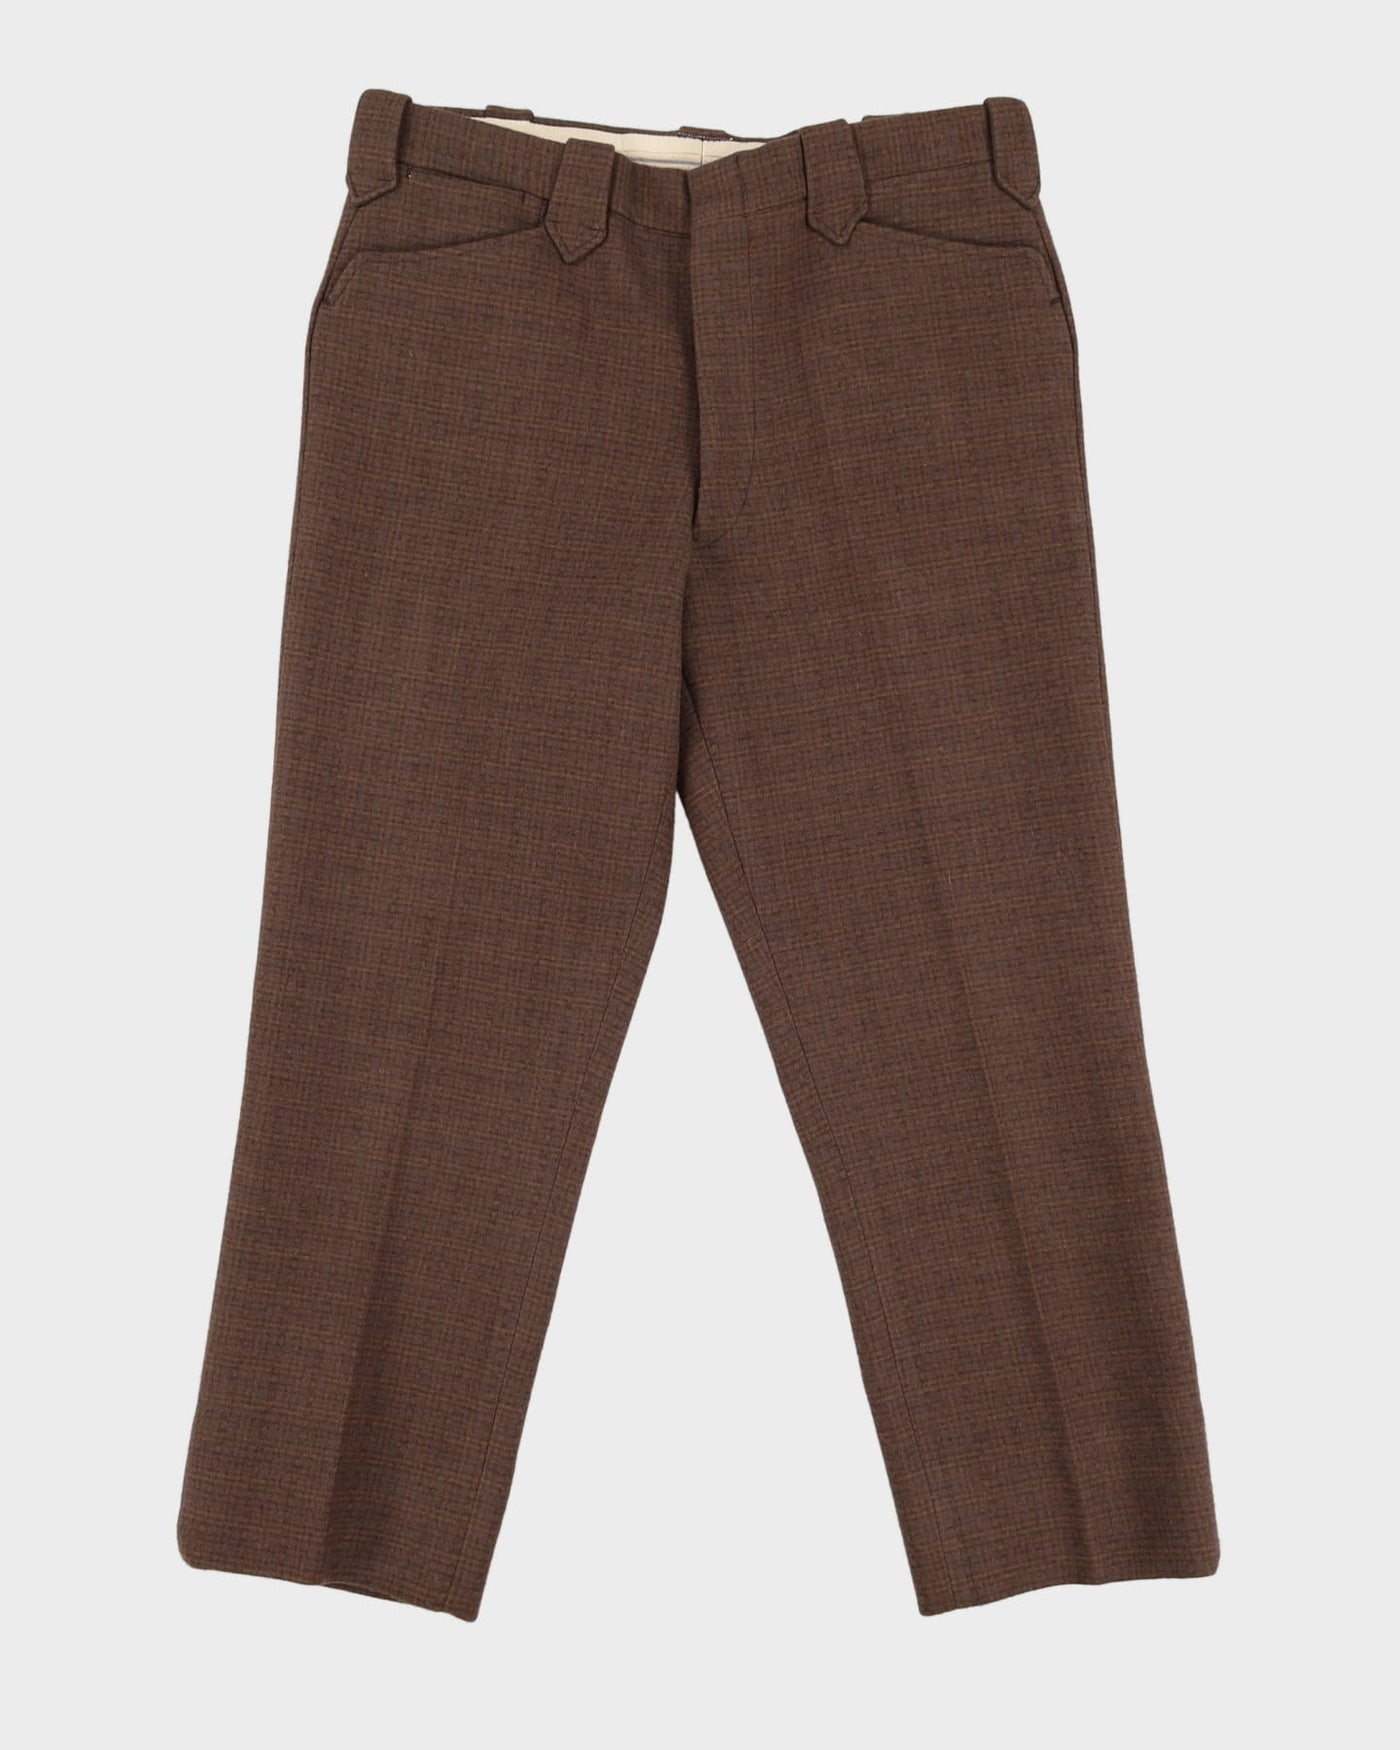 Vintage 70s Eddie Bauer Brown Wool Trousers - W38 L28